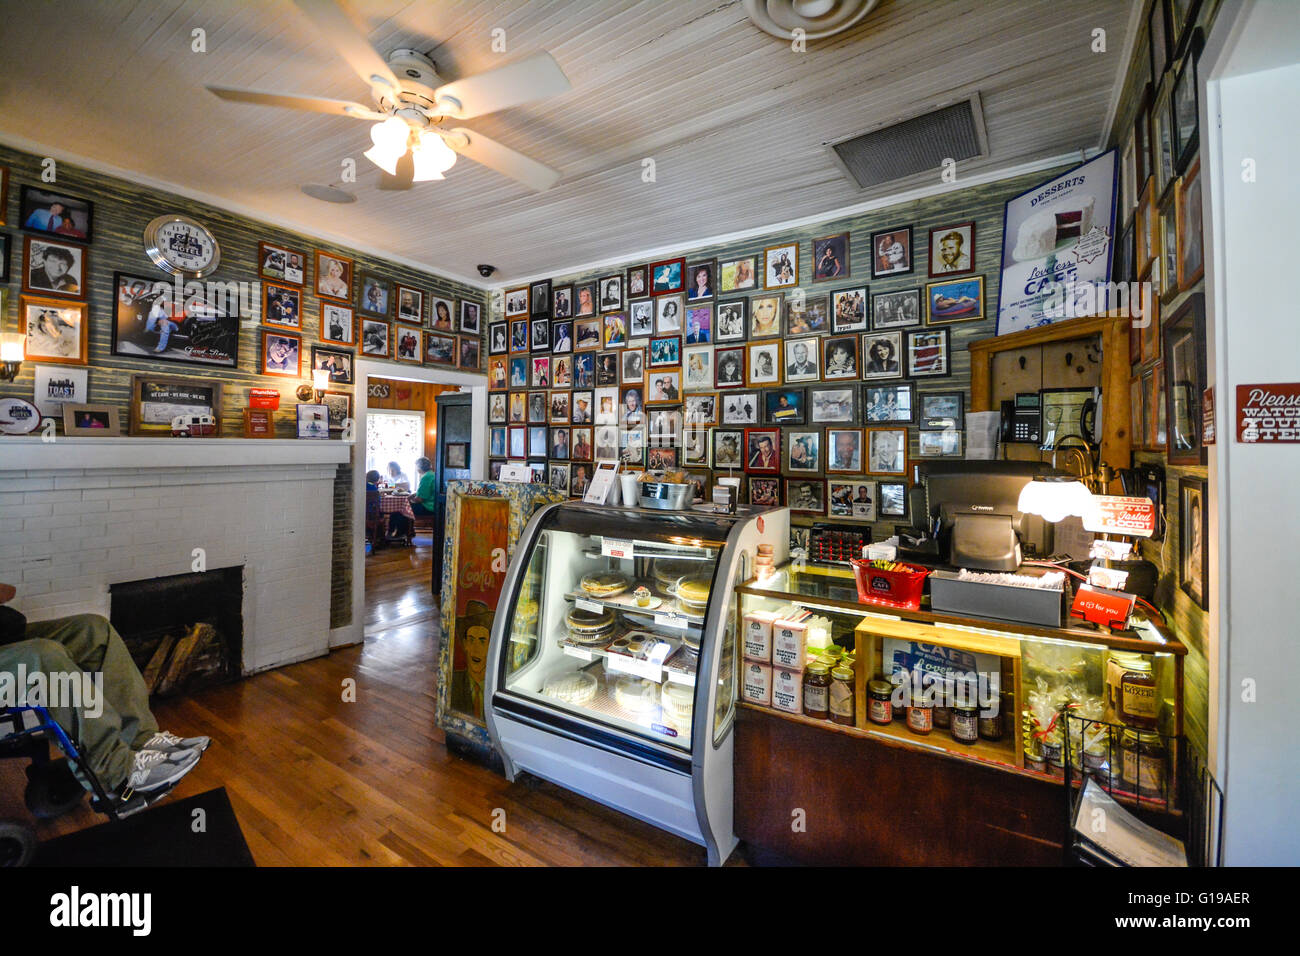 Área de recepción con las famosas fotos de Country Stars en Wall of Fame en el Loveless Cafe & Motel, famoso por su cocina campestre, Nashville, Tennessee, EE.UU Foto de stock